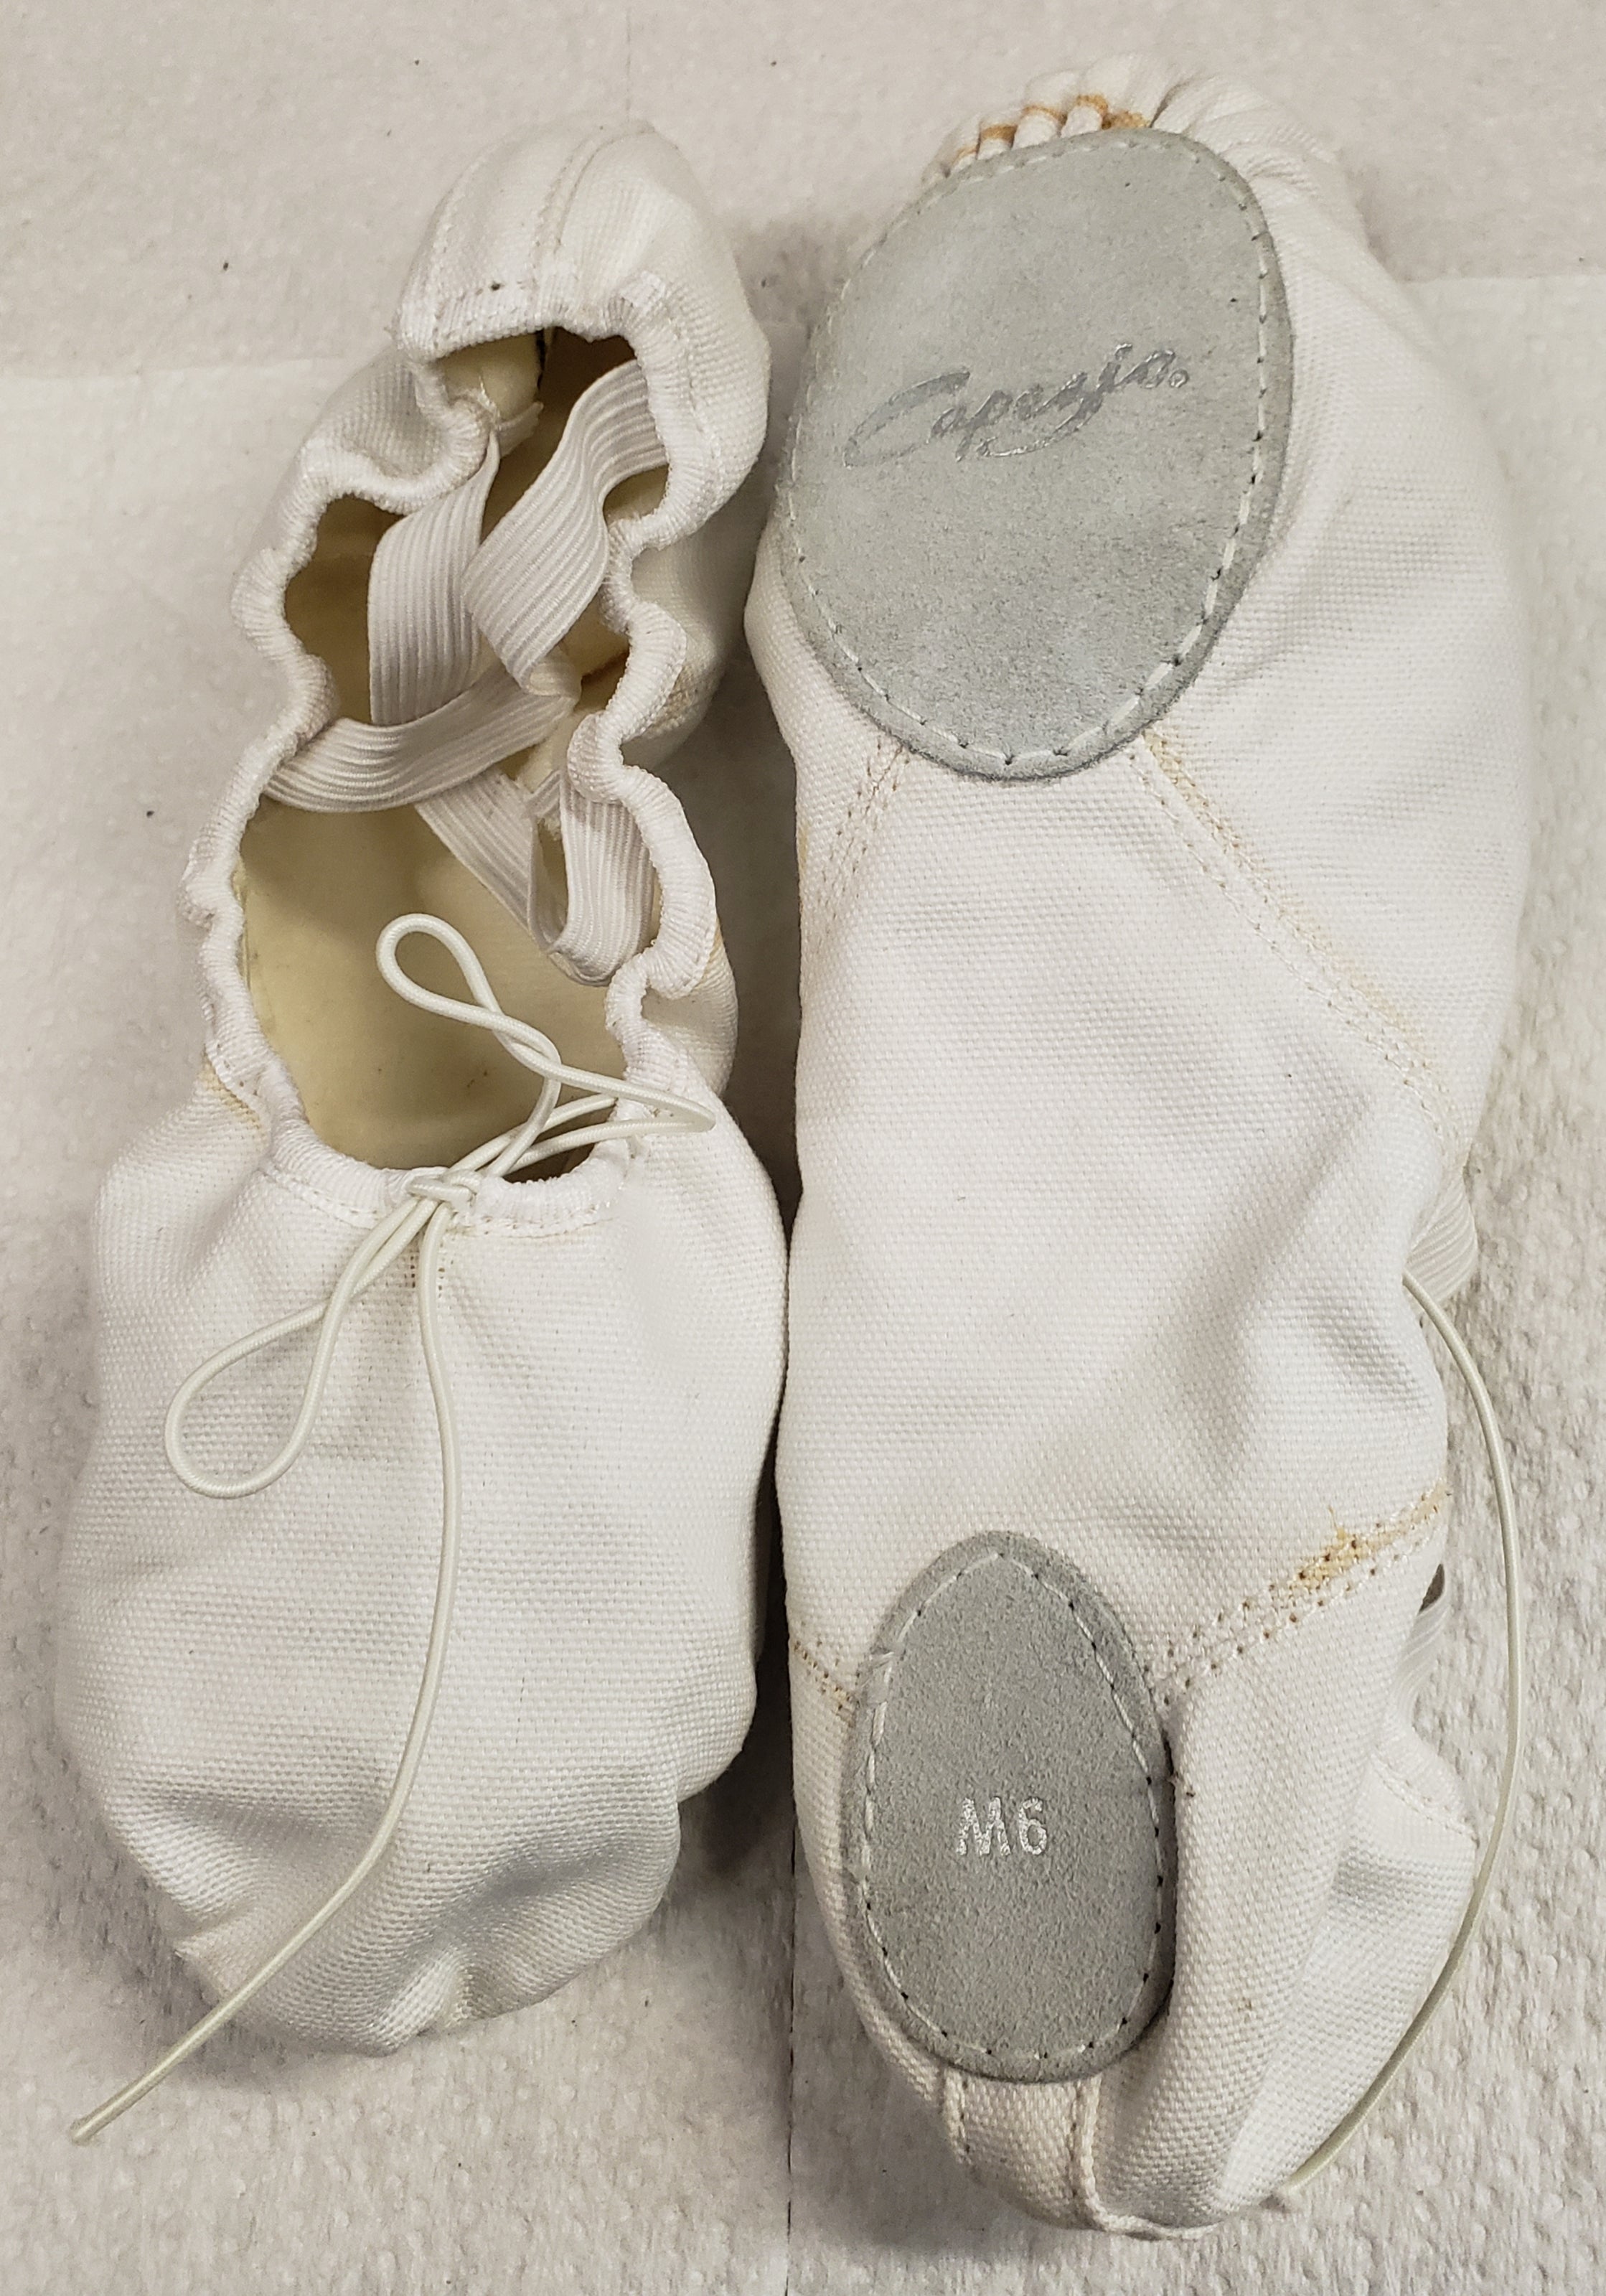 Capezio, Juliet Canvas Split, Sole Ballet Shoes, 2028C, Child